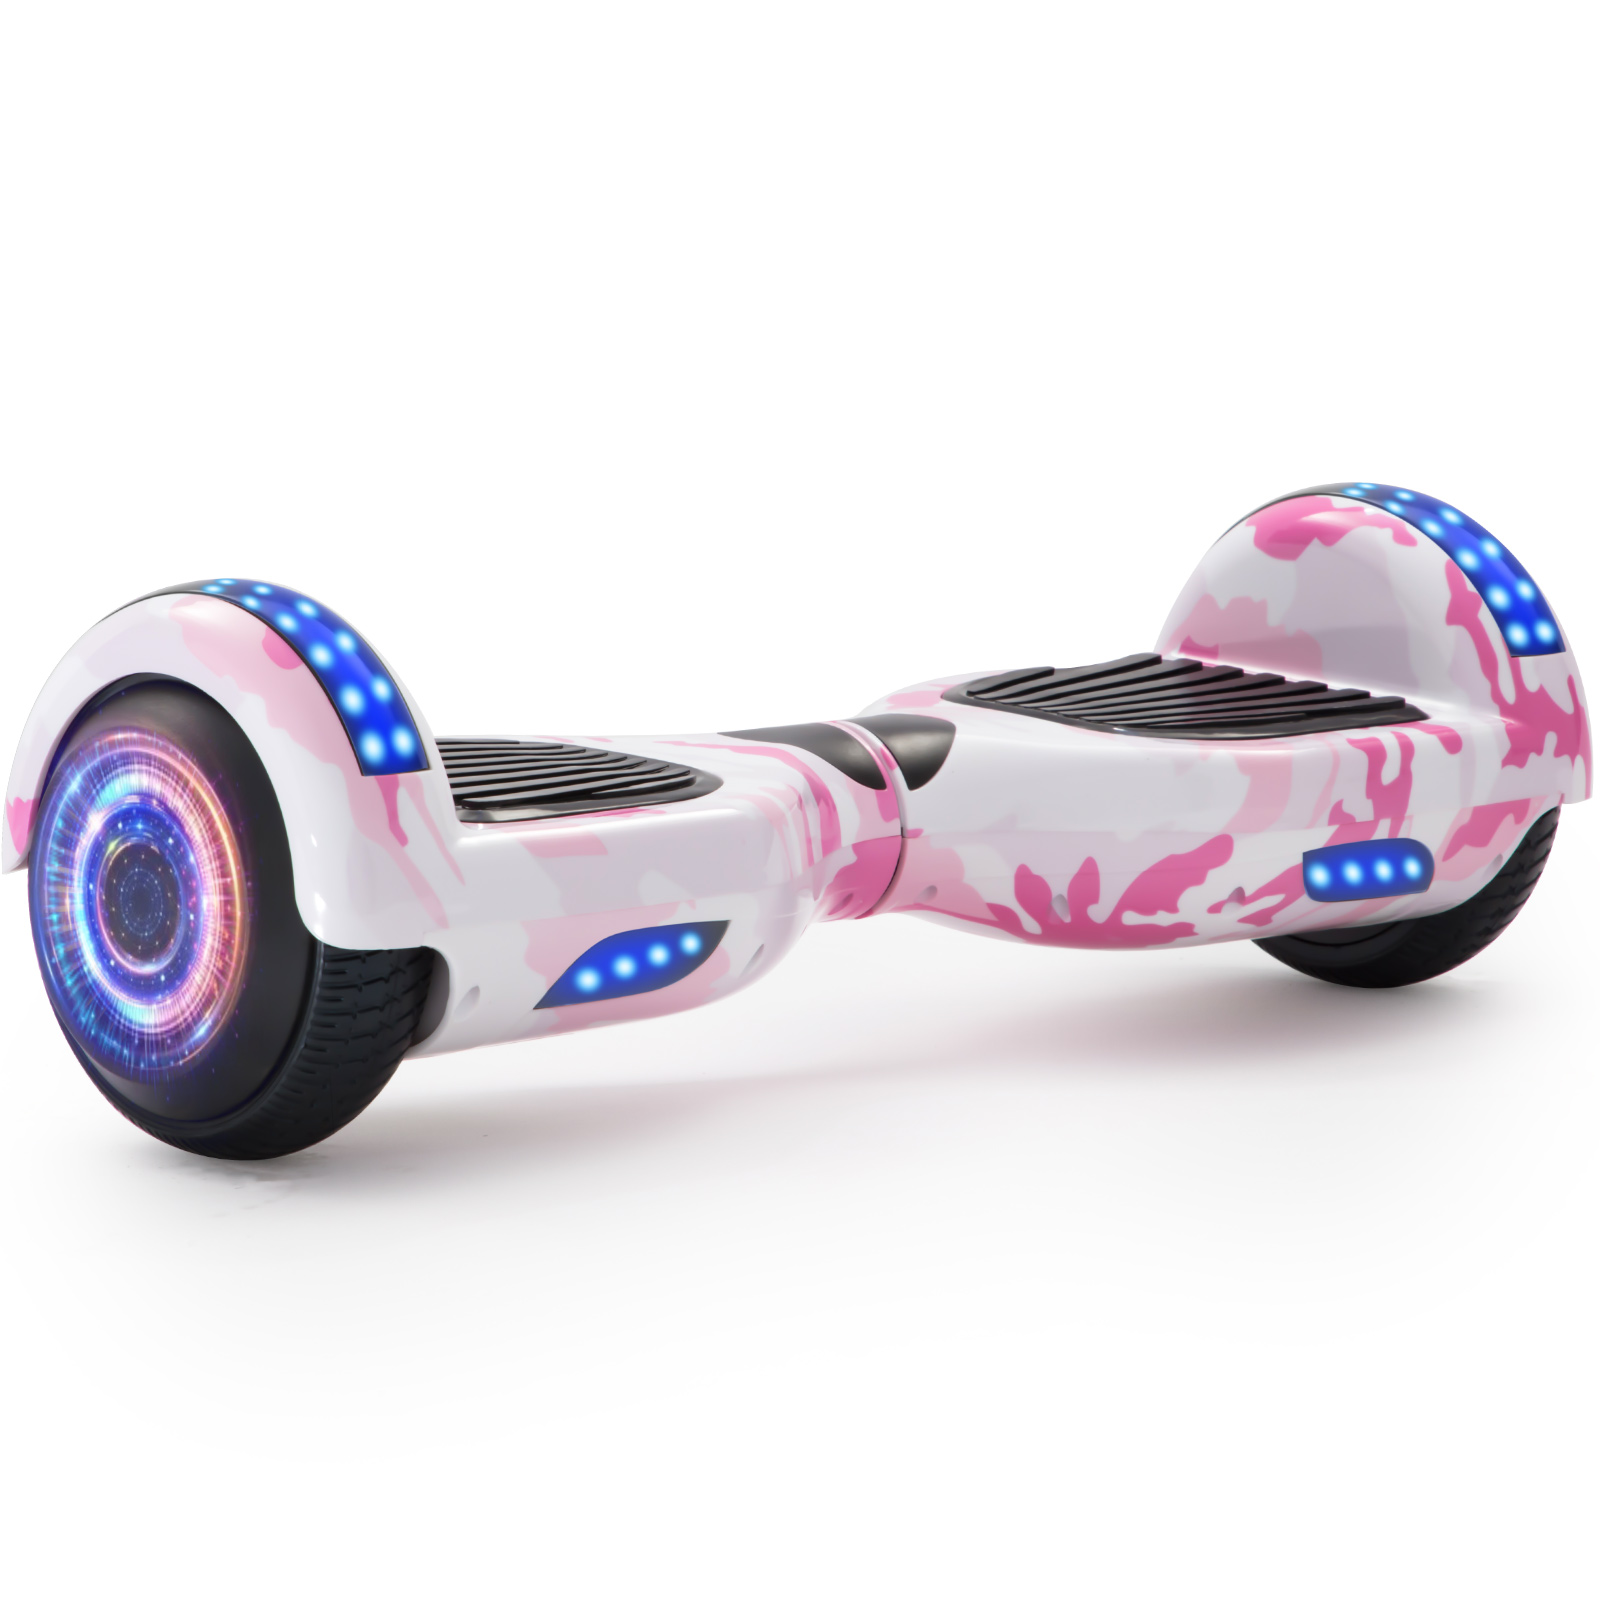 Neues 6,5" Camouflage Hoverboard rosa mit Bluetooth Musik Lautsprecher und LED Licht - 500W 12km/h